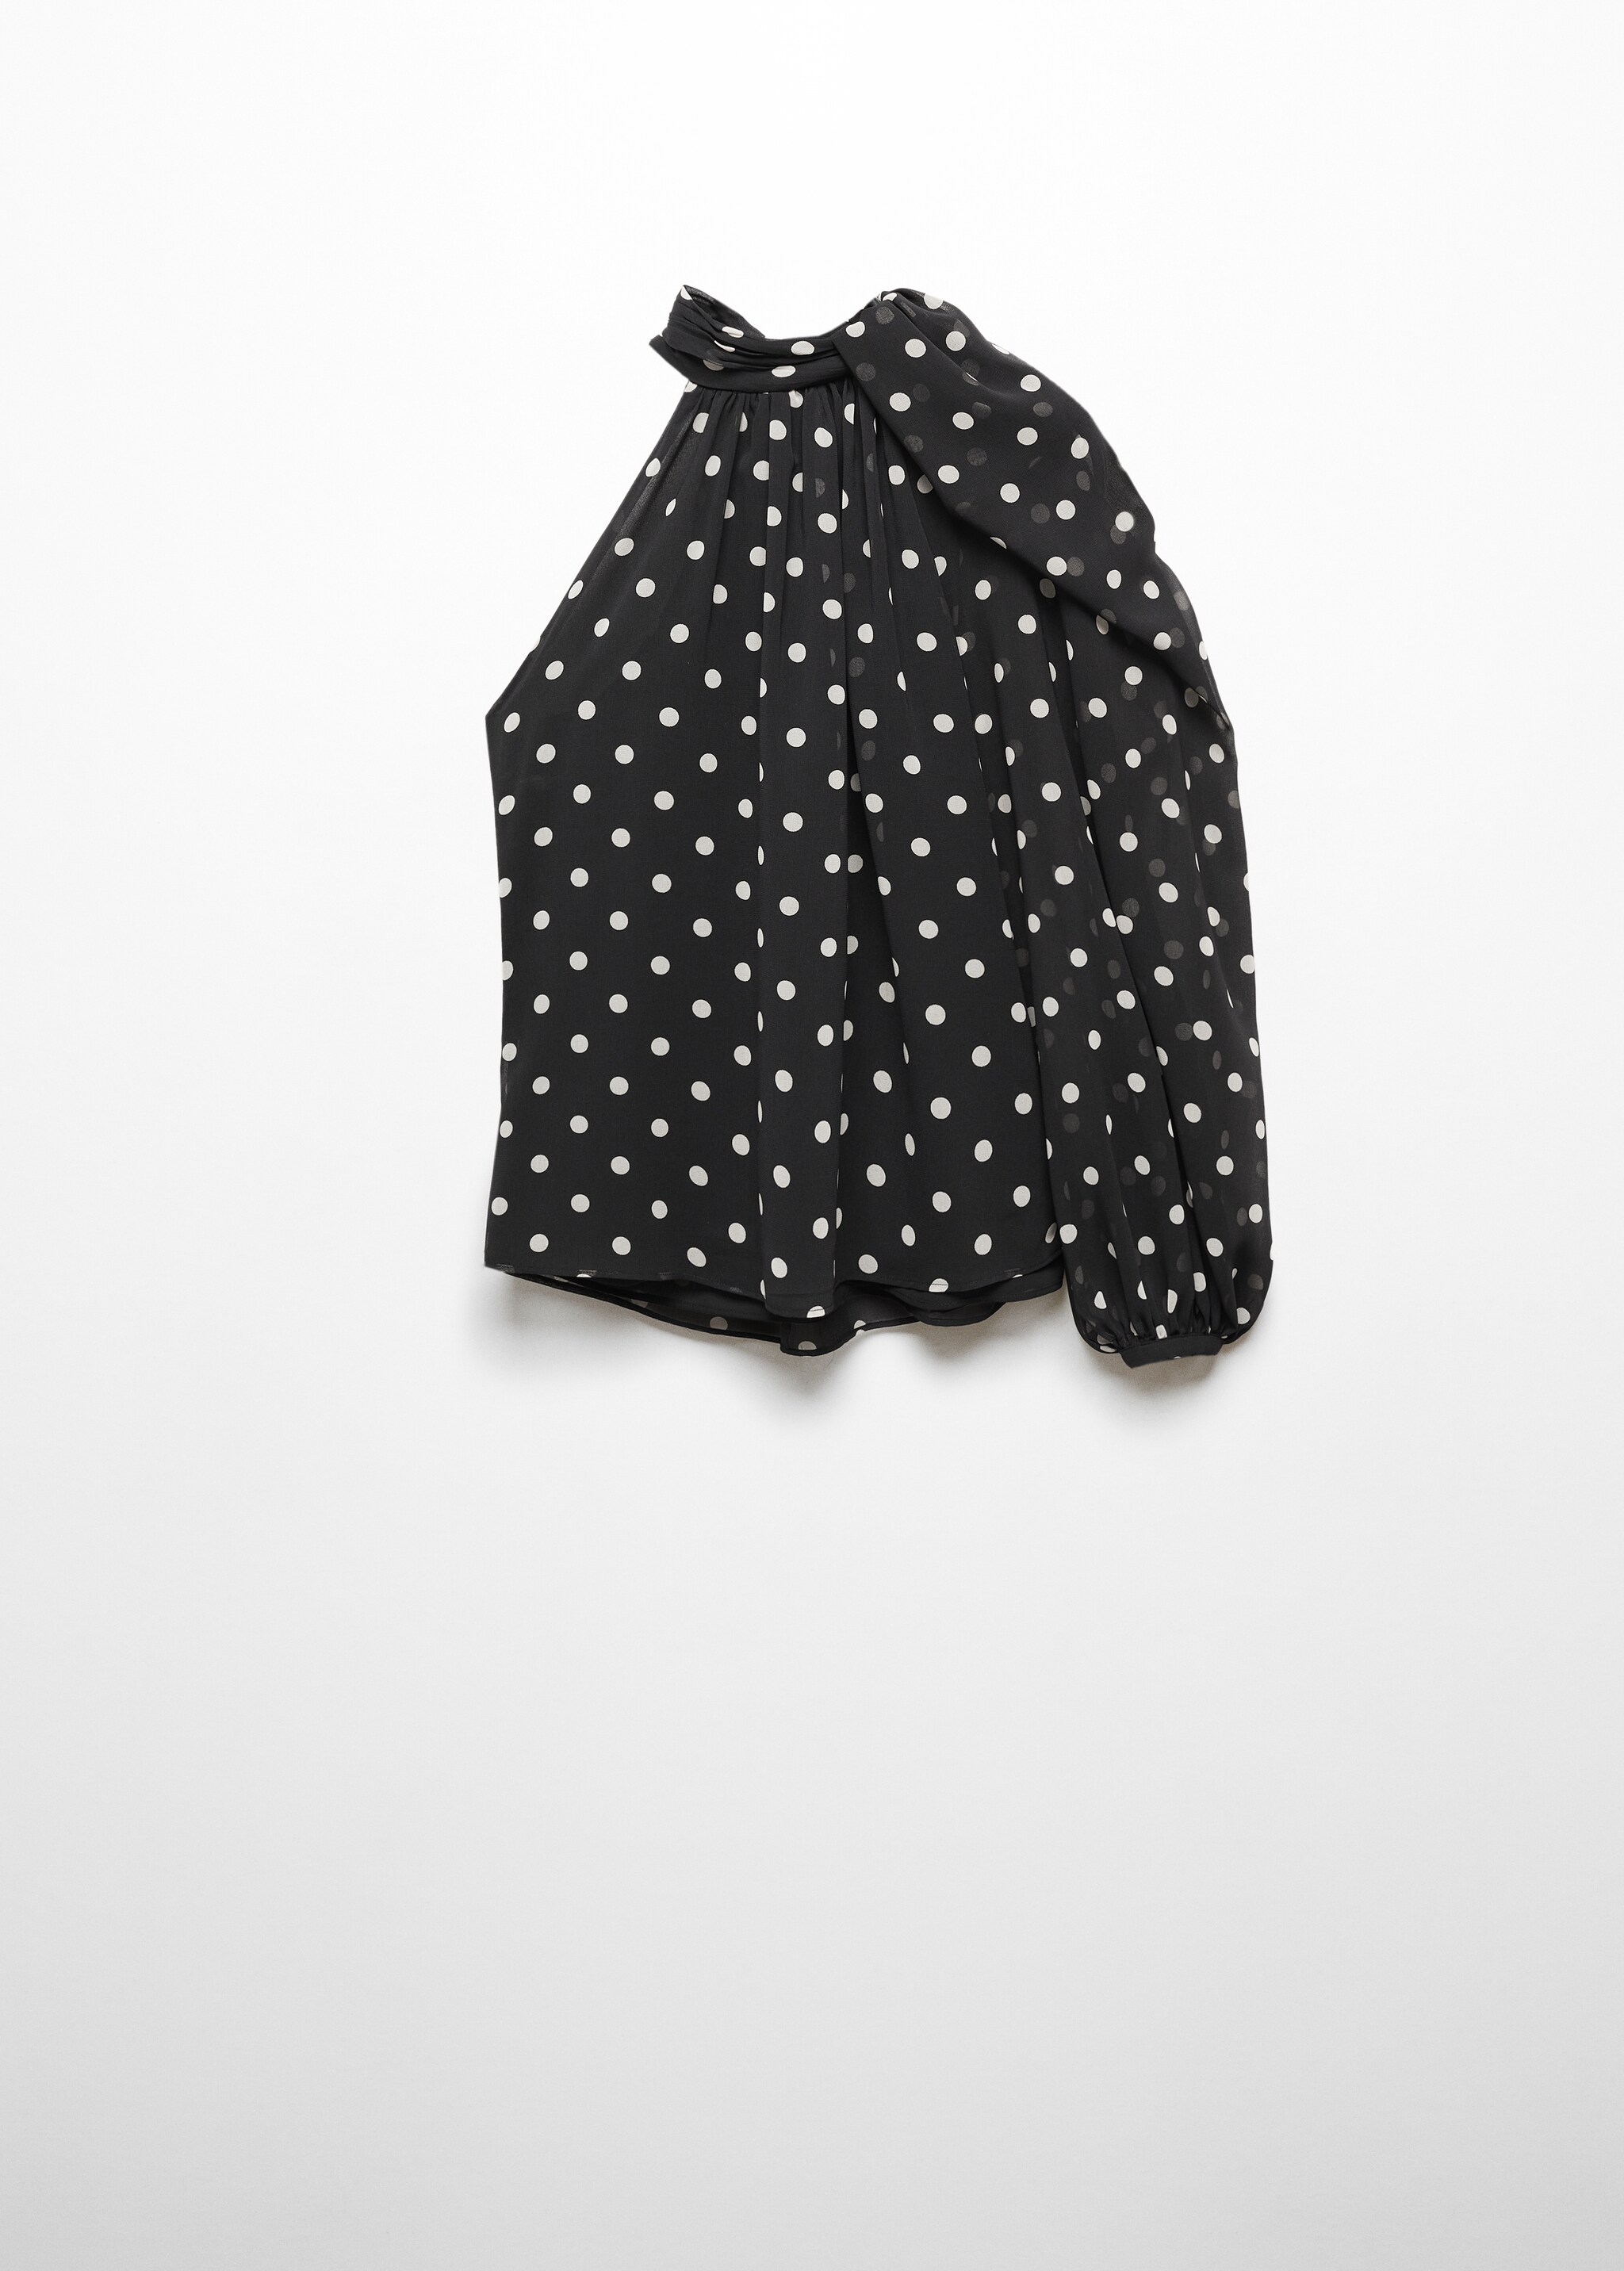 Асимметричная блузка в горошек - Изделие без модели